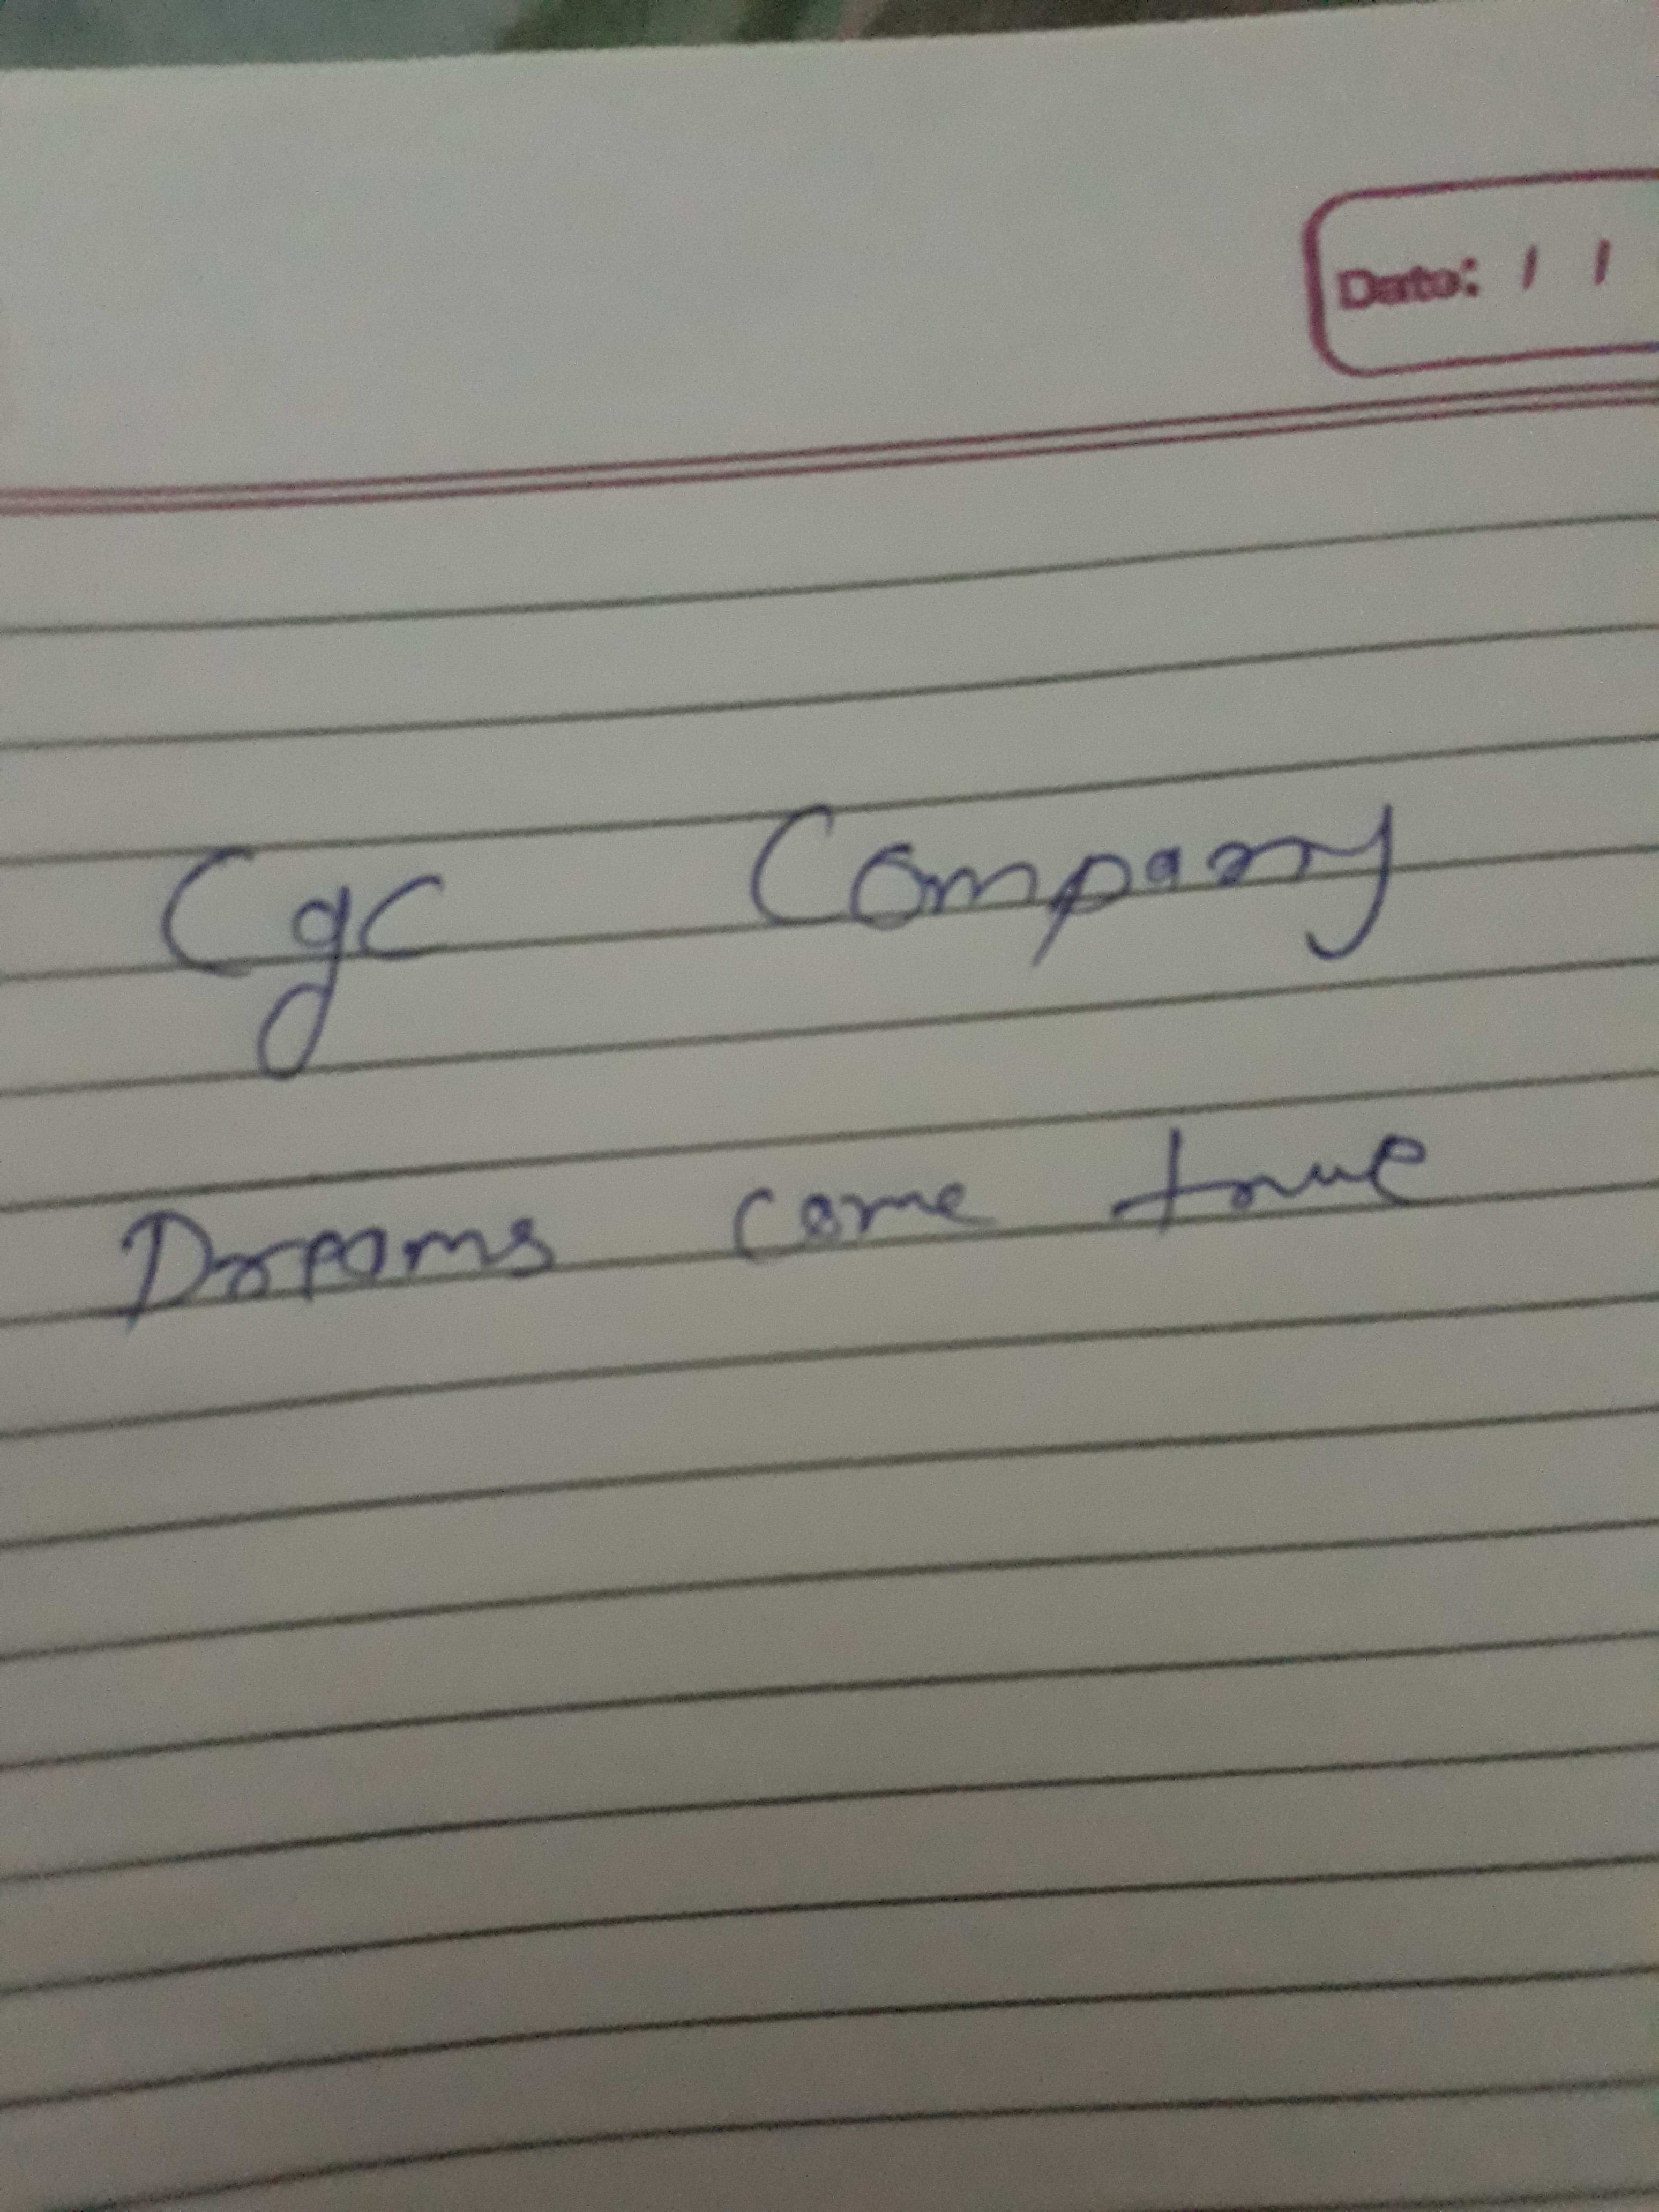 Cgc Company